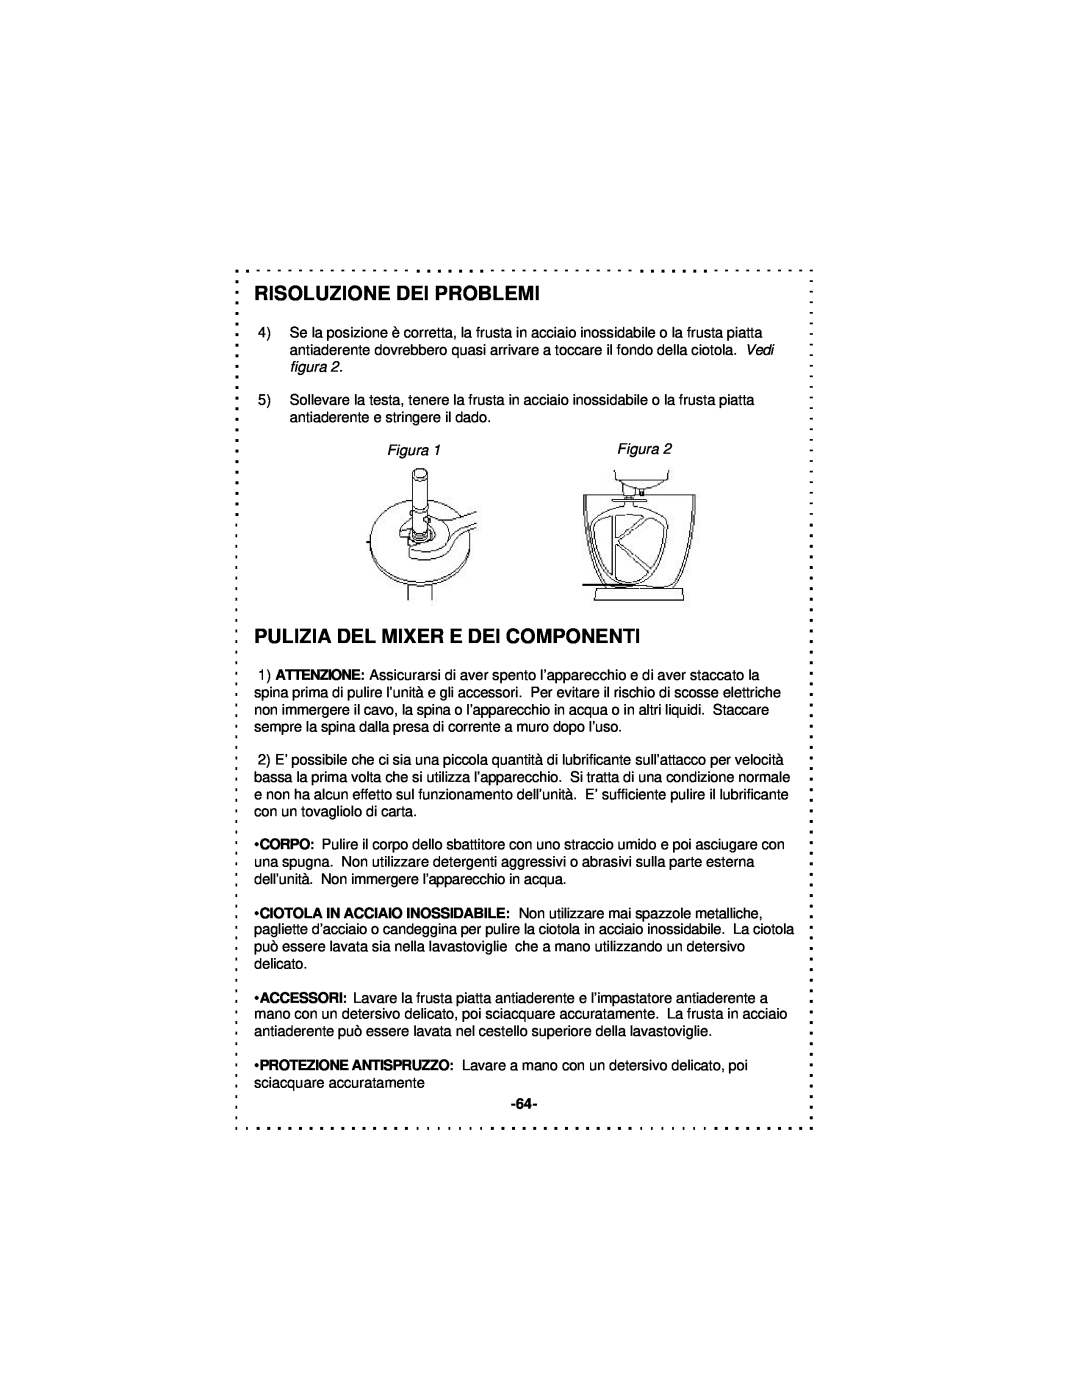 DeLonghi DSM5 - 7 Series instruction manual Risoluzione Dei Problemi, Pulizia Del Mixer E Dei Componenti, Figura 